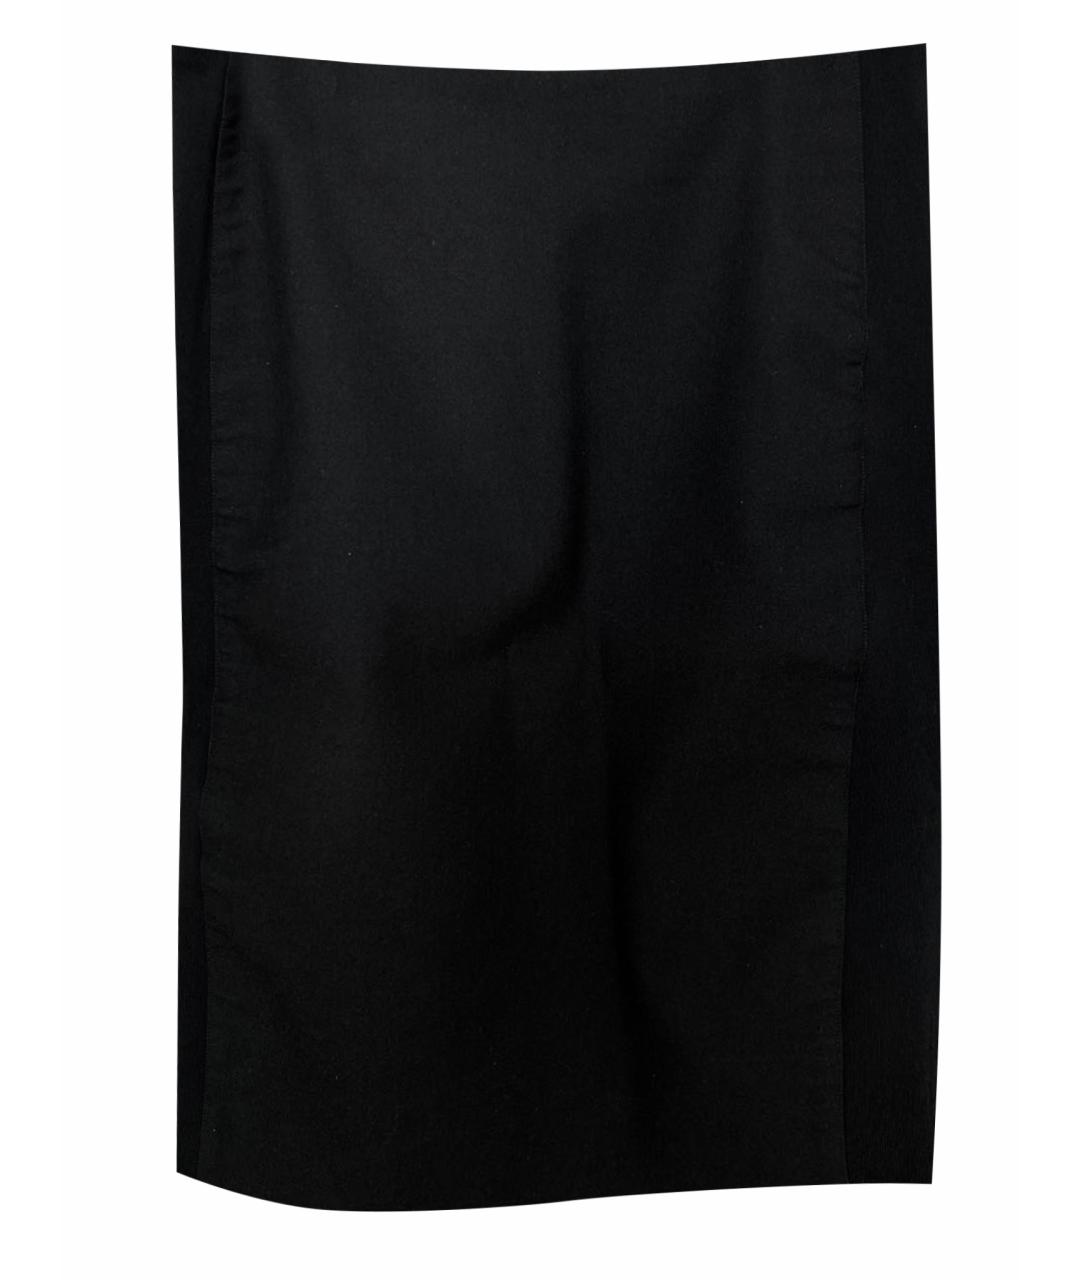 BALENCIAGA Черная полиэстеровая юбка миди, фото 1